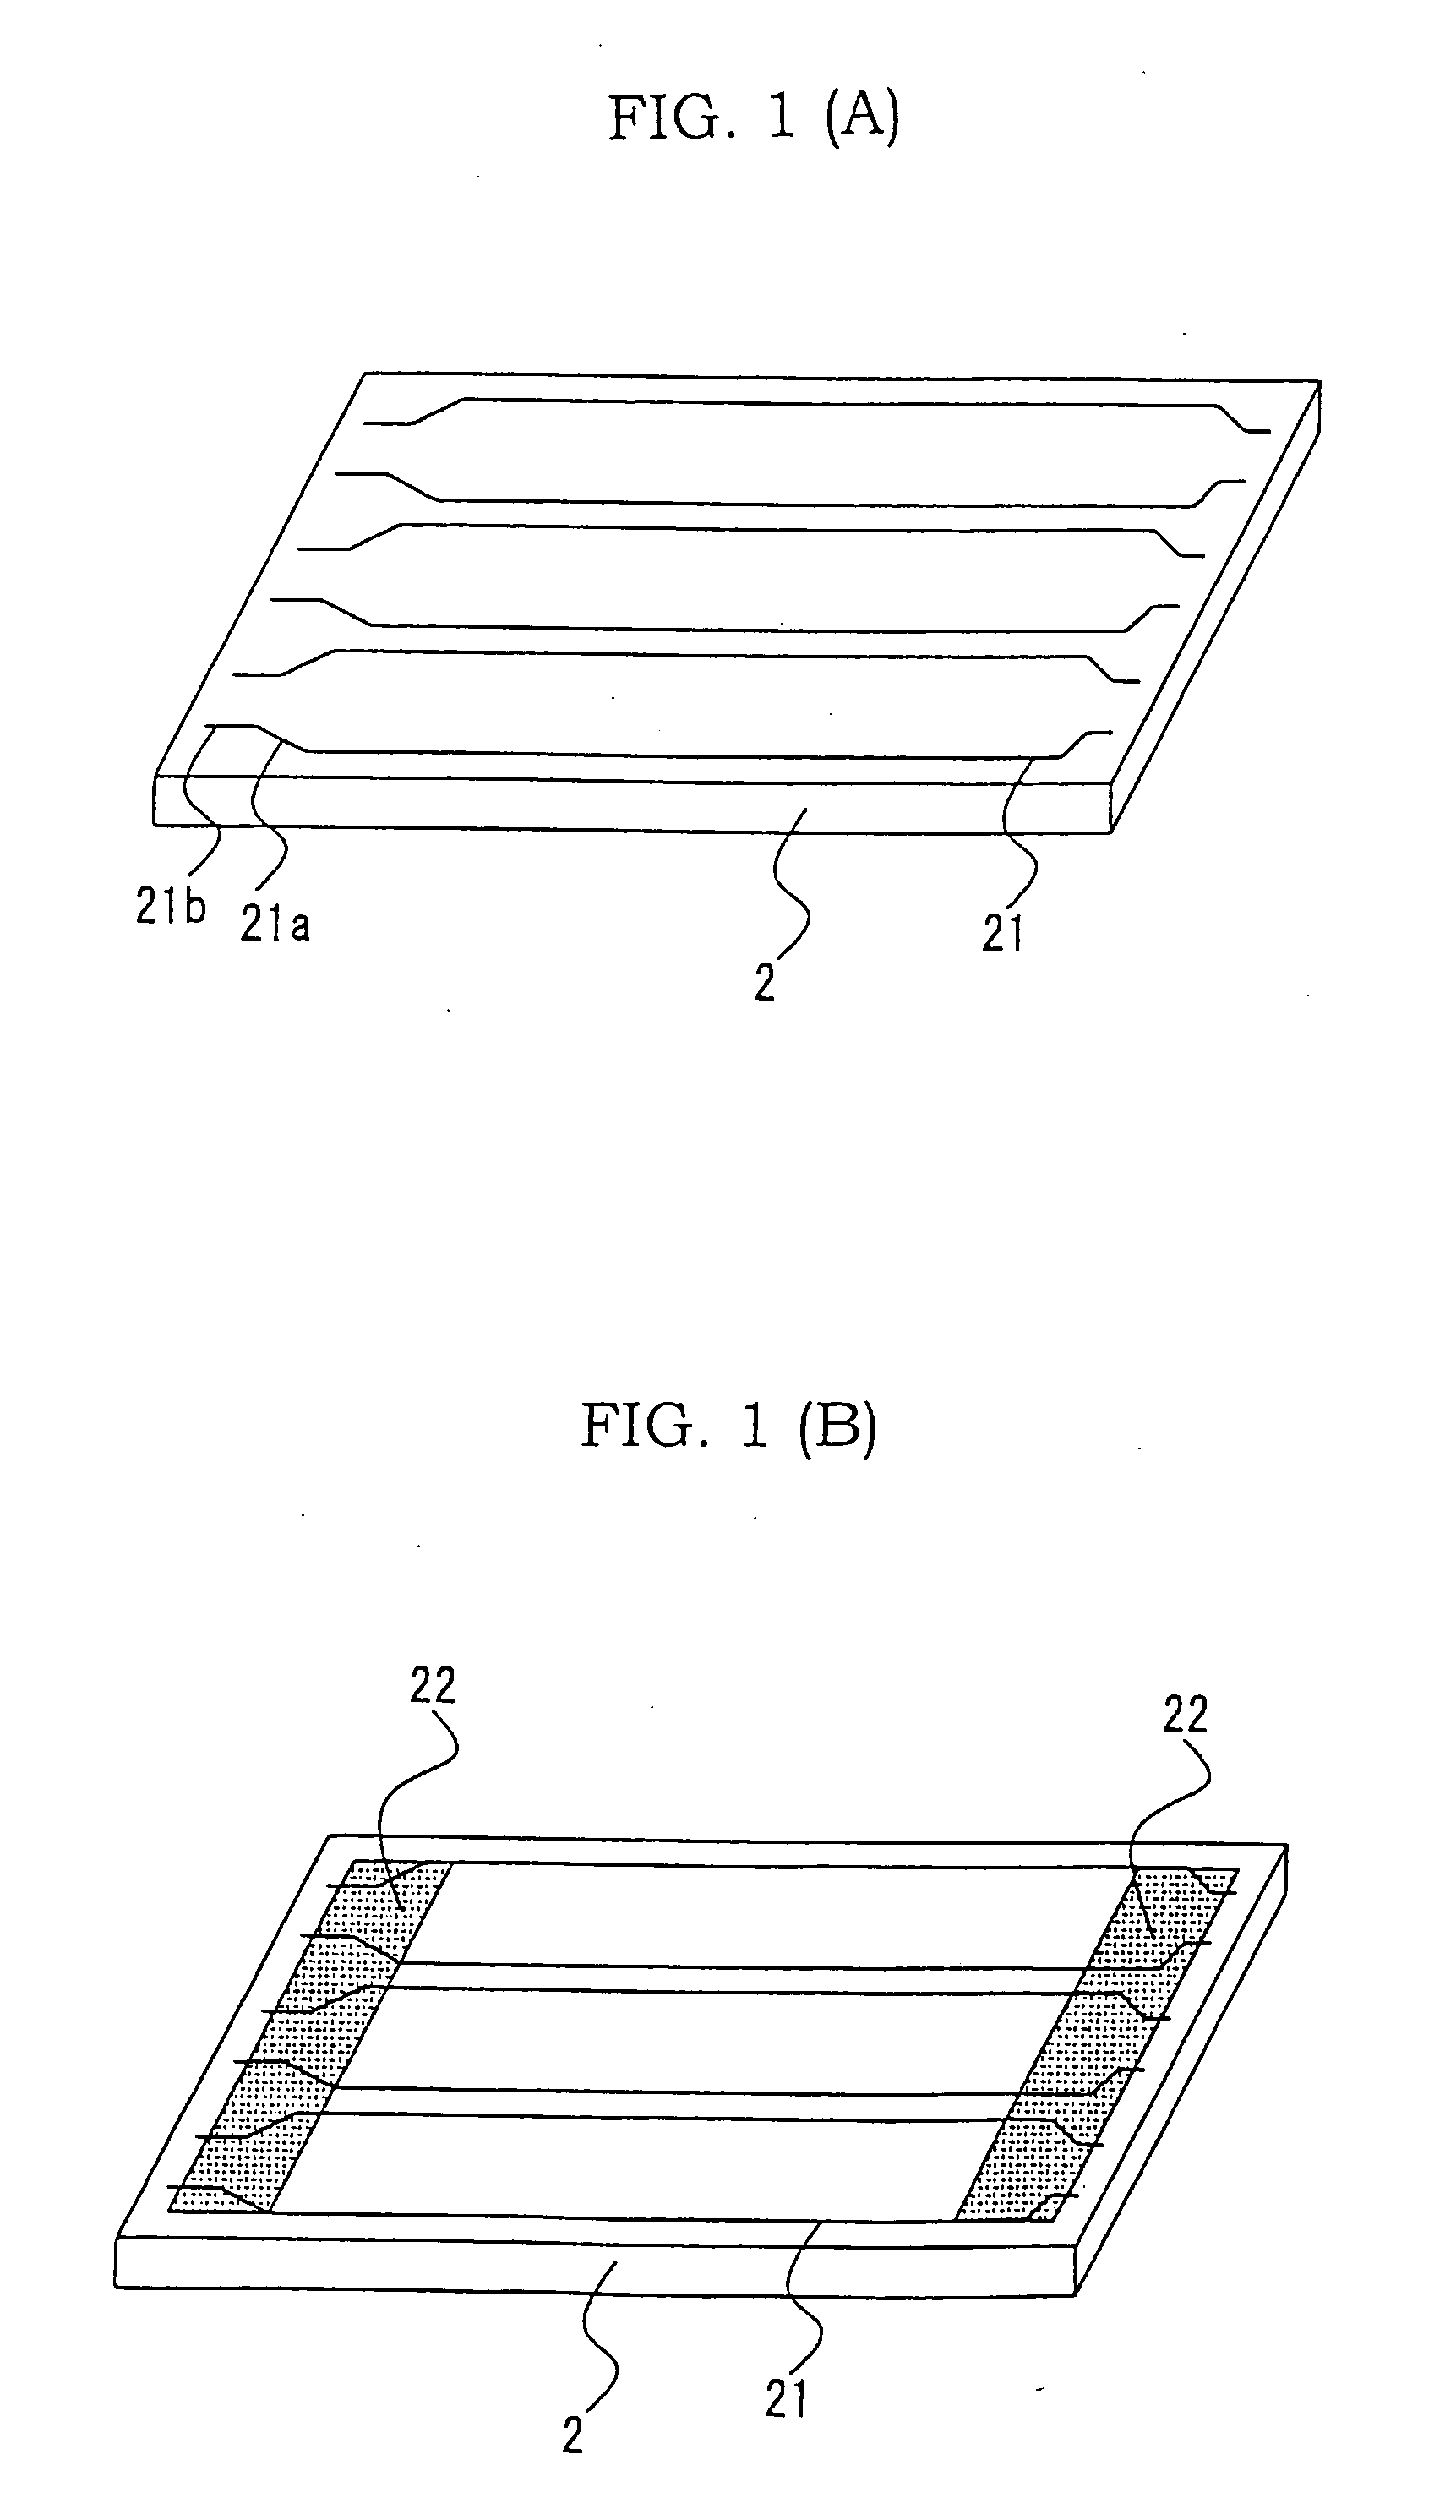 Method of manufacturing a plasma display panel